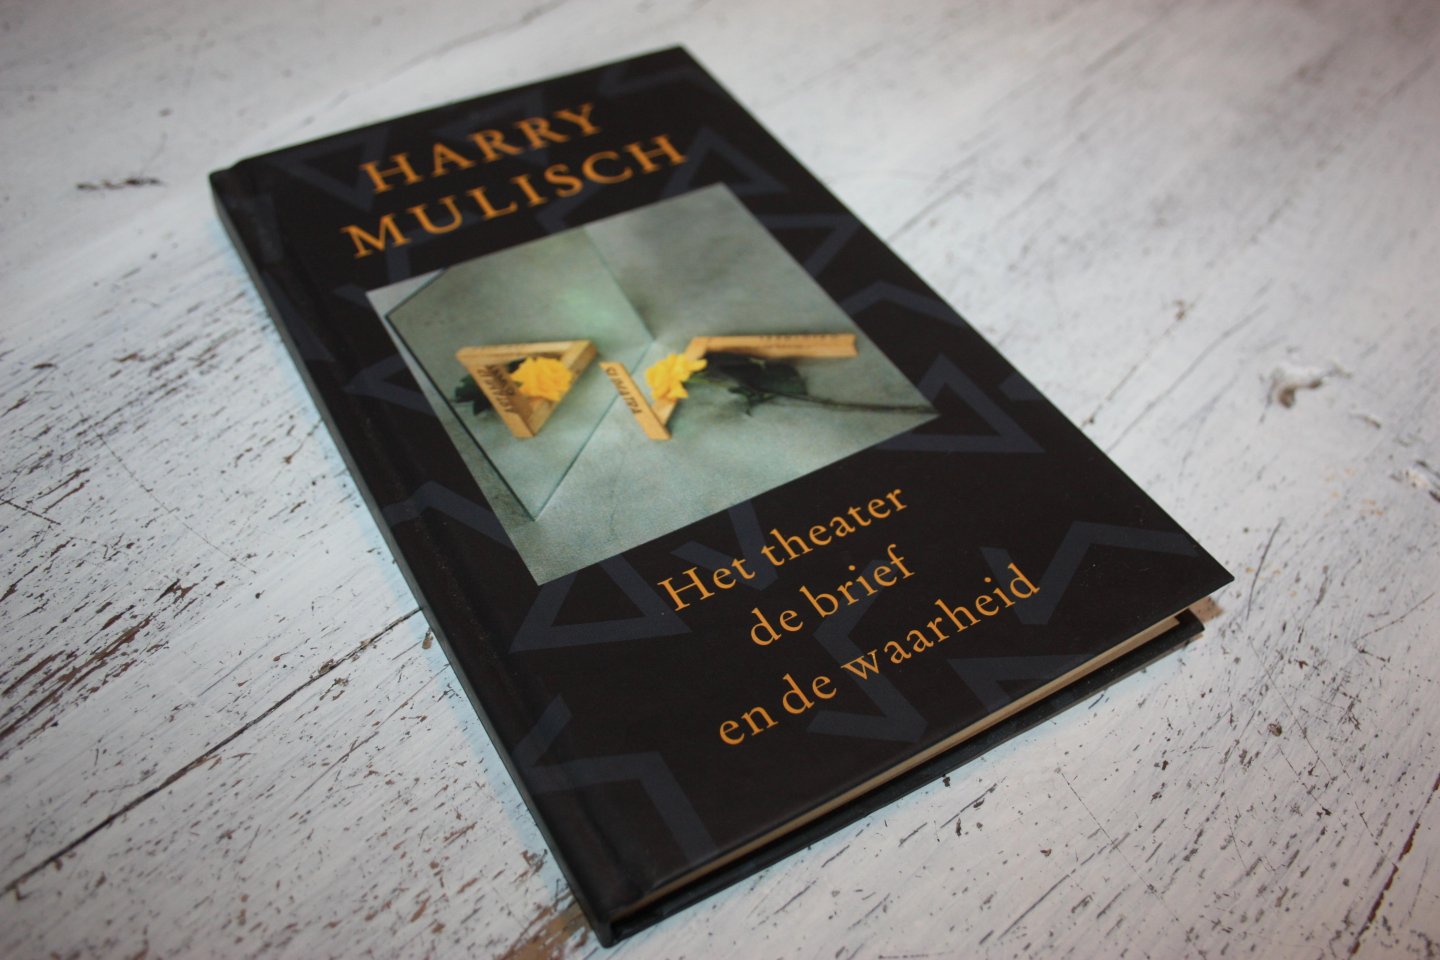 Mulisch, Harry - Boekenweek 2000, HET THEATER DE BRIEF EN DE WAARHEID